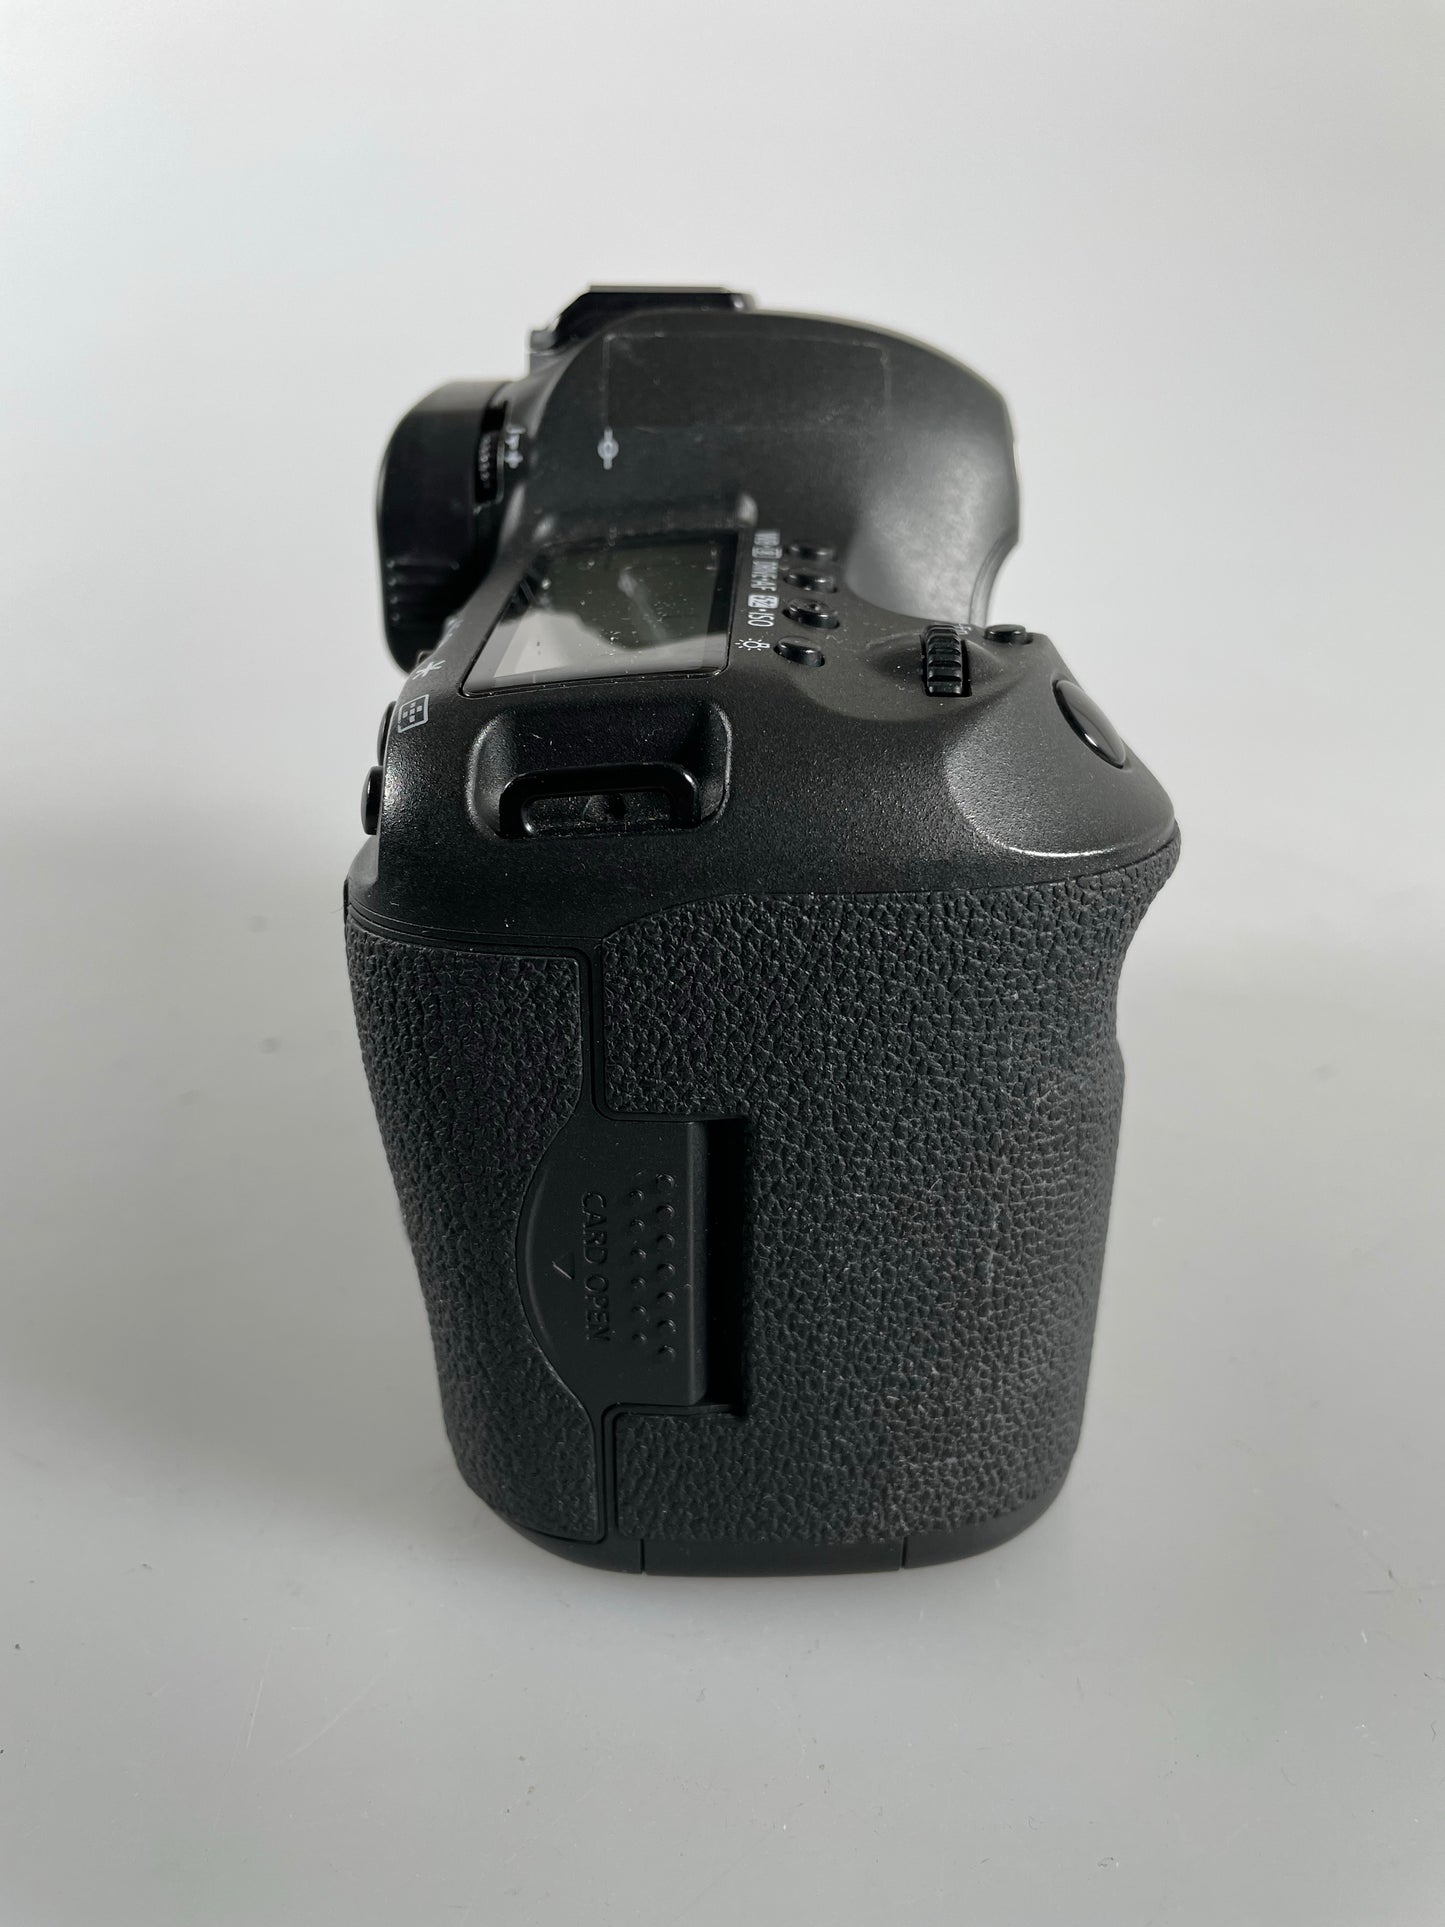 Canon EOS 5DS DSLR Digital Camera Body 50.6MP 5DS